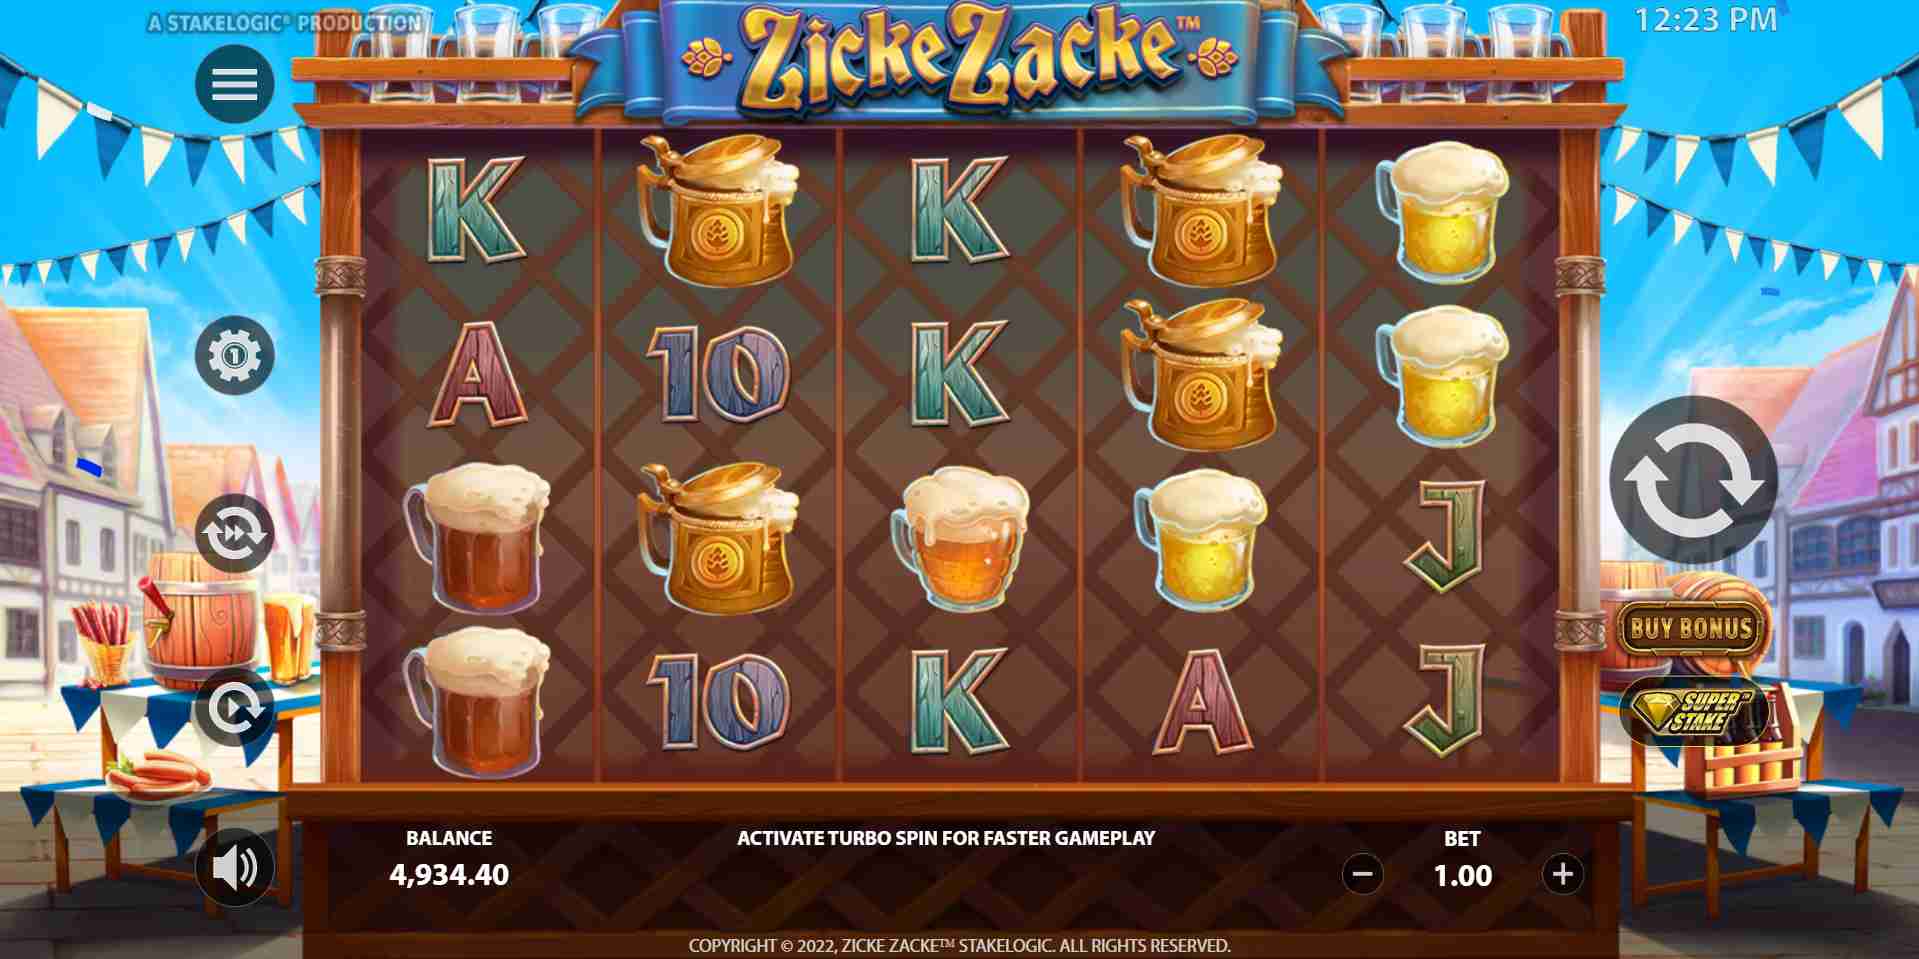 Zicke Zacke Base Game